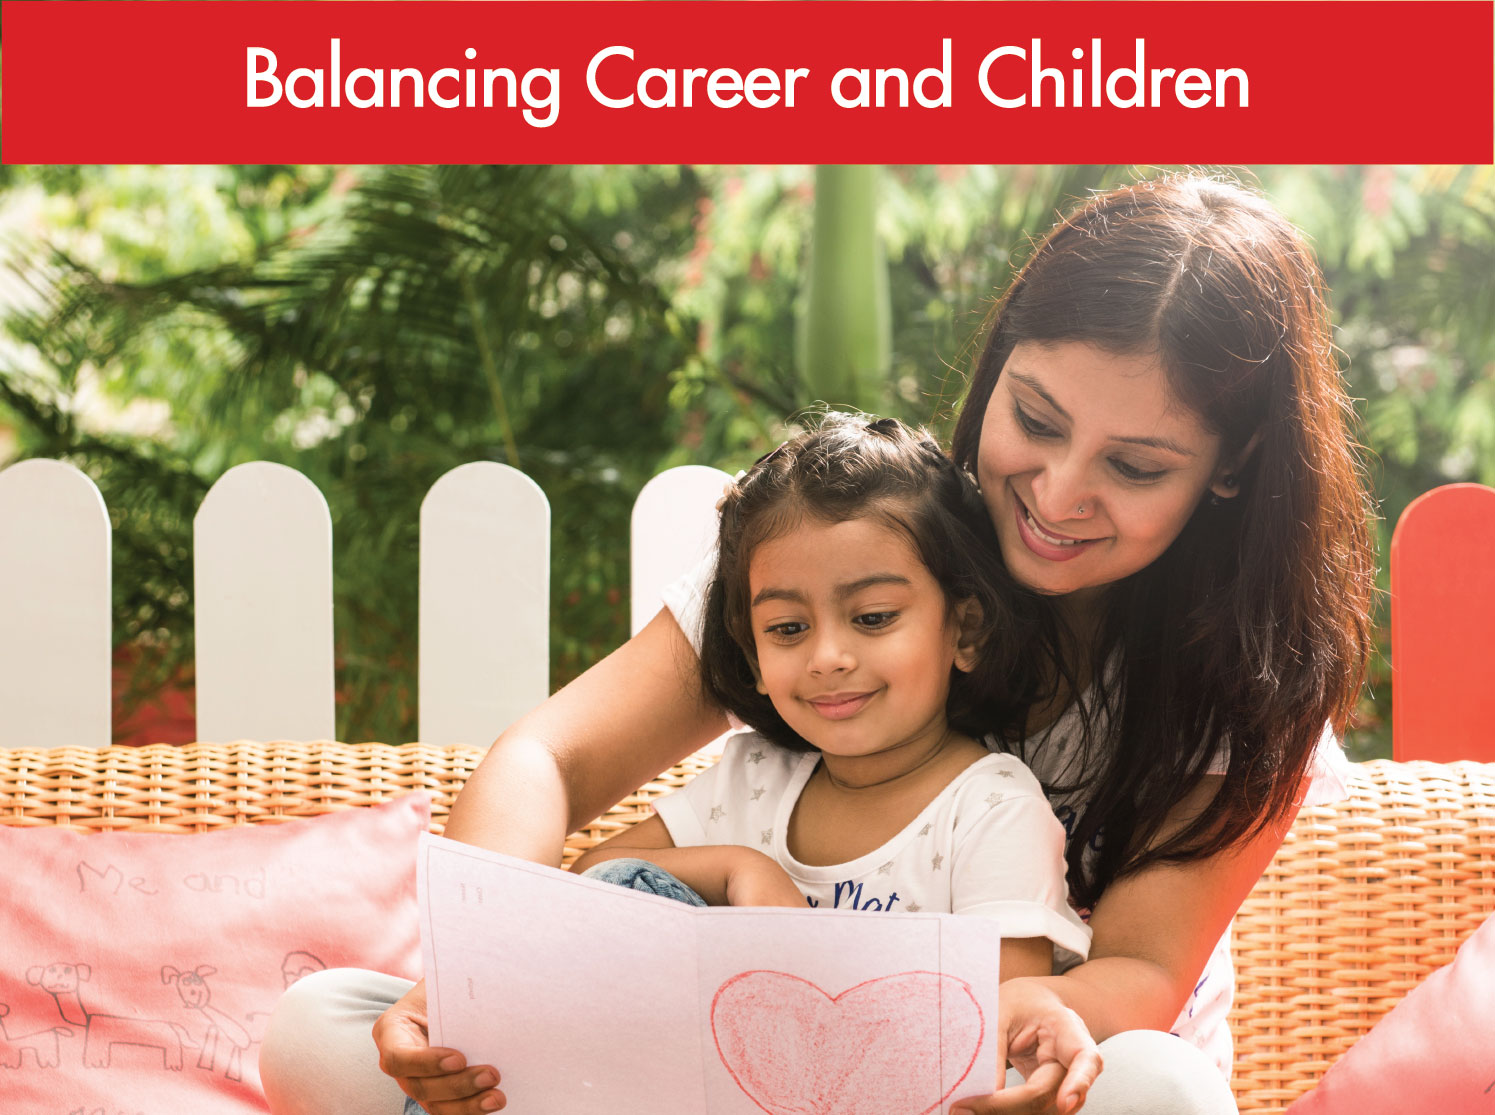 Balancing between work and children